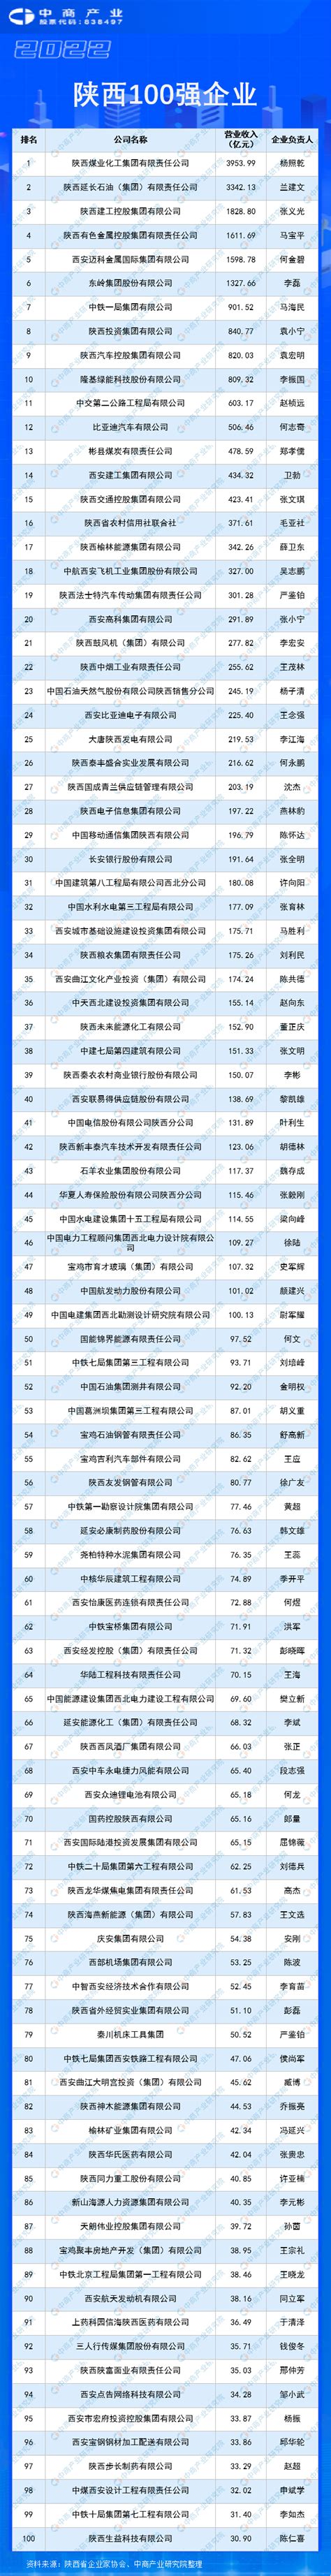 报告 | 2018年6月陕西新三板企业市值排行榜_中金在线财经号